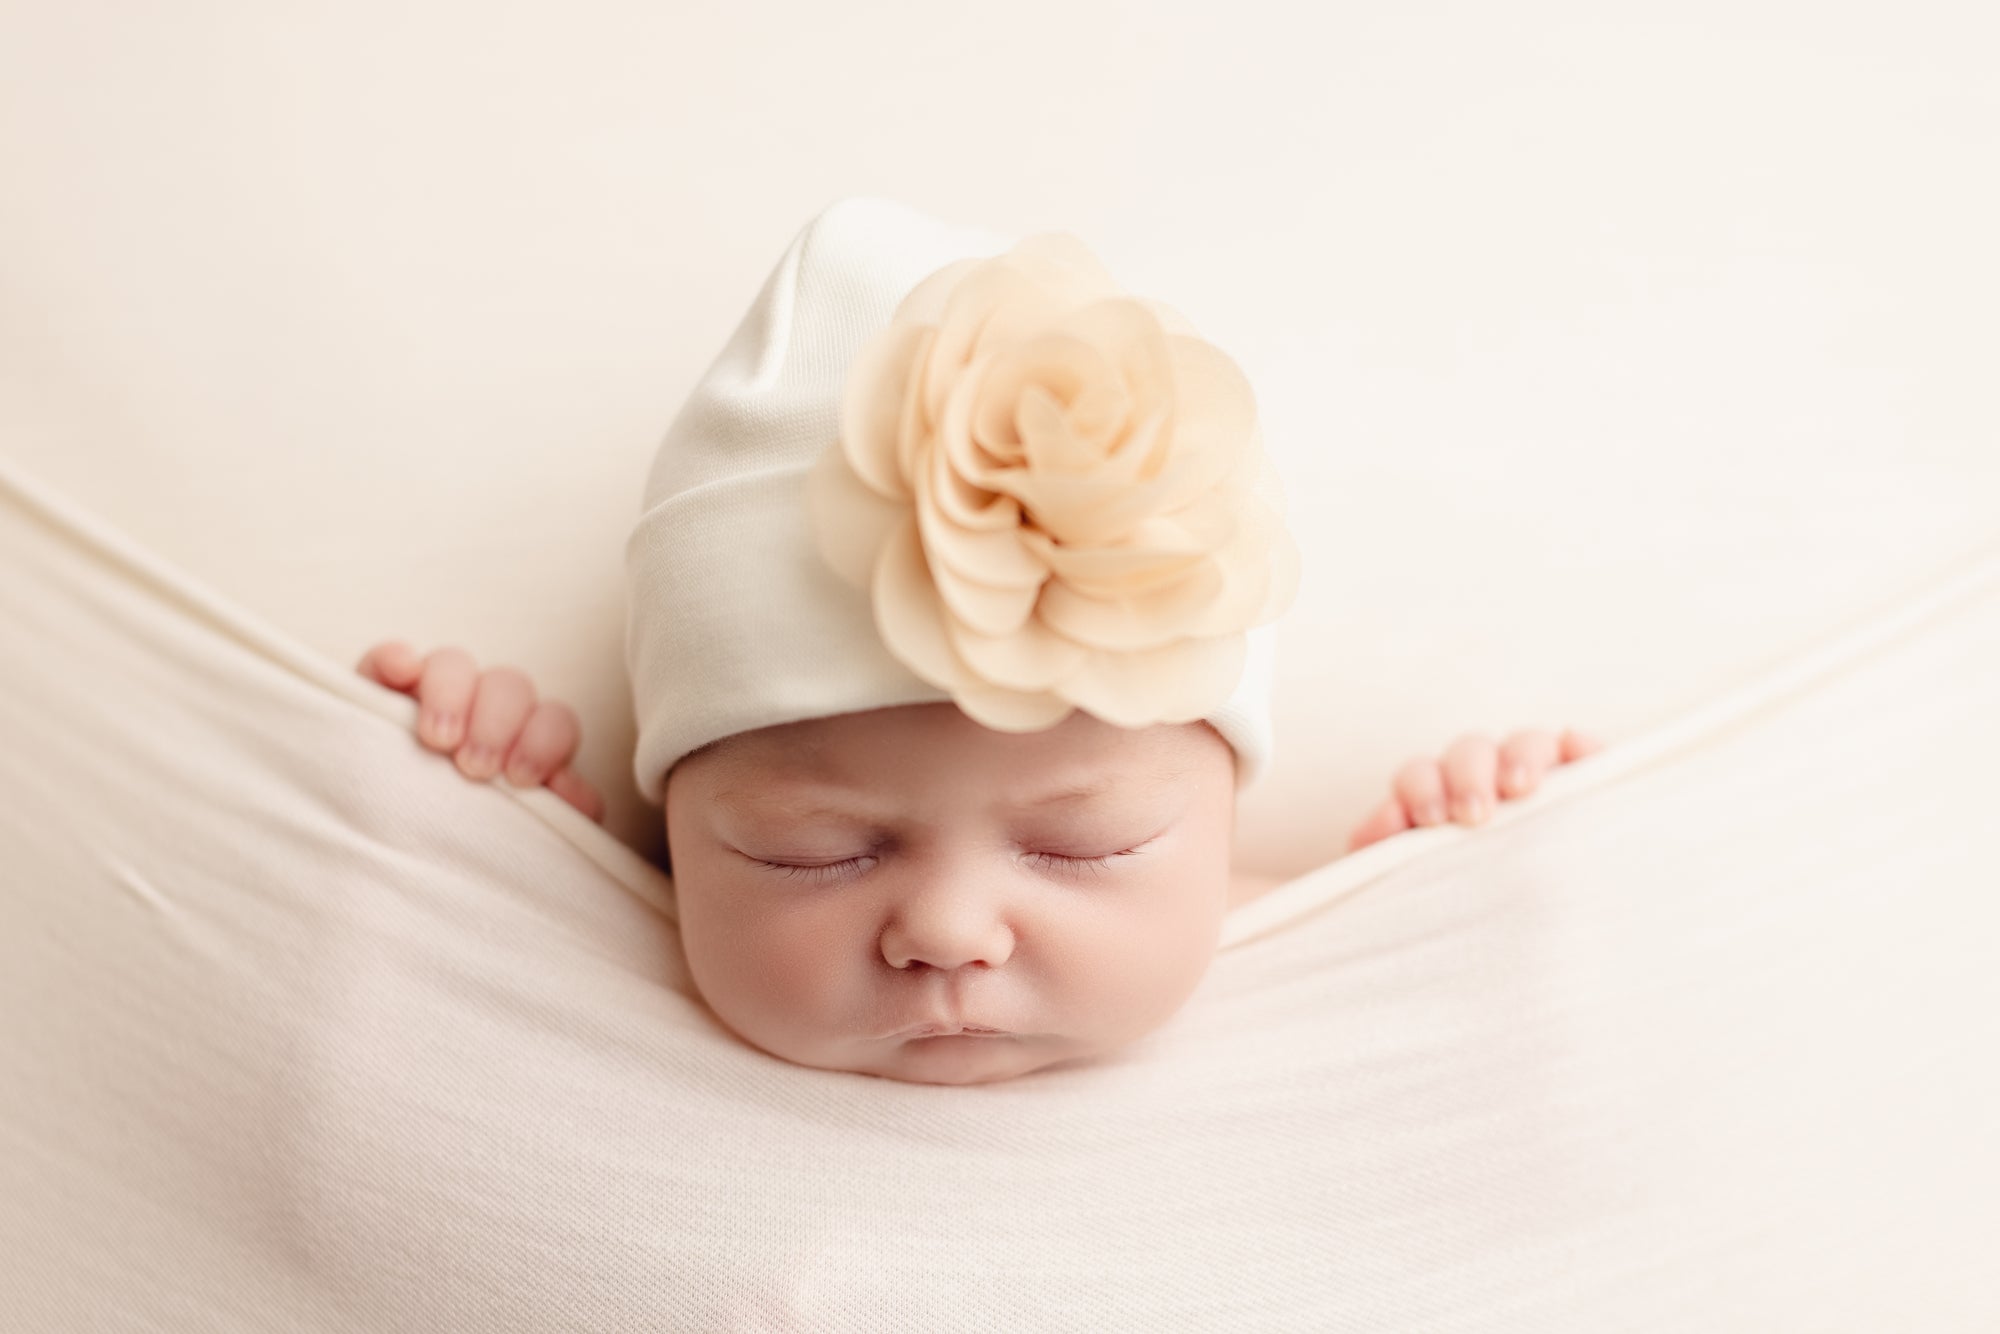 'Blossom Flower' Baby Hat // Beige